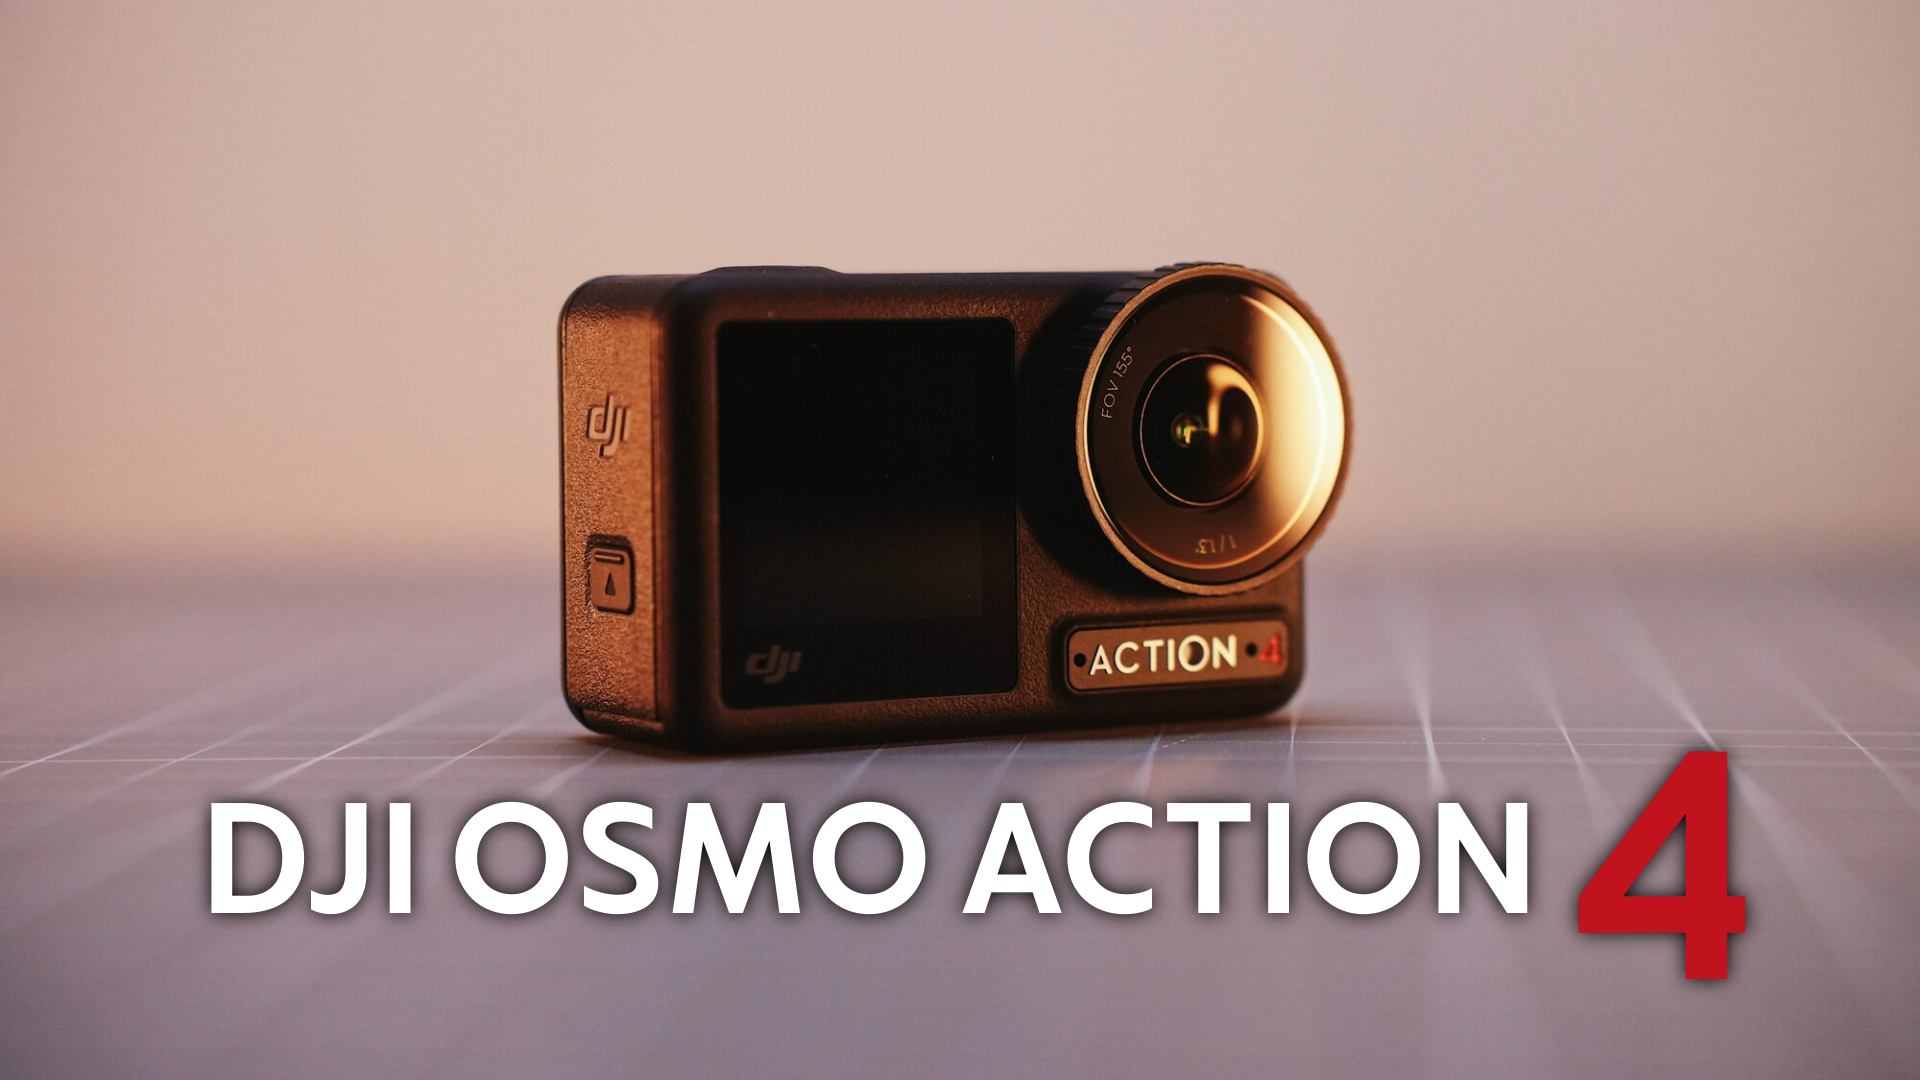 Обзор DJI Osmo Action 4. Прощай gopro и здравствуй dji. Моя новая экшн камера!